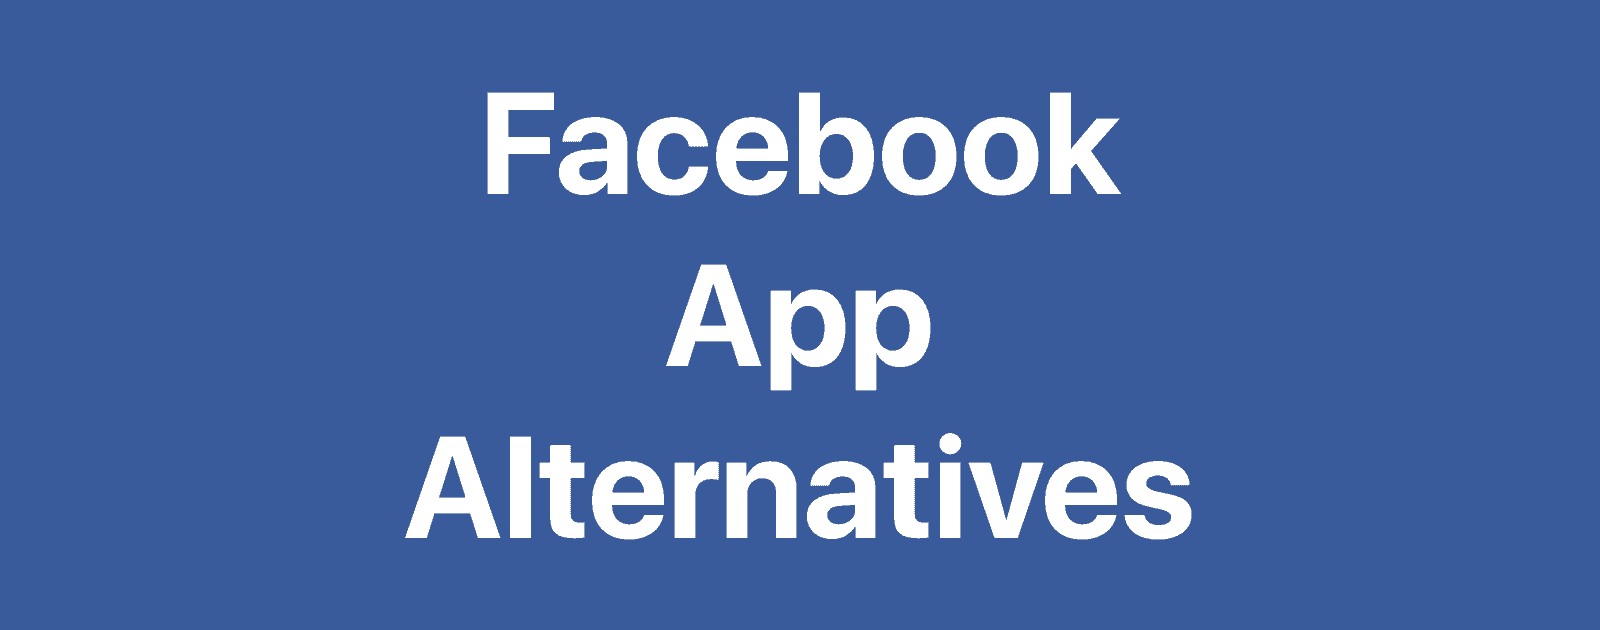 Facebook App Alternatives You Can Use to Defeat Mark Zuckerberg